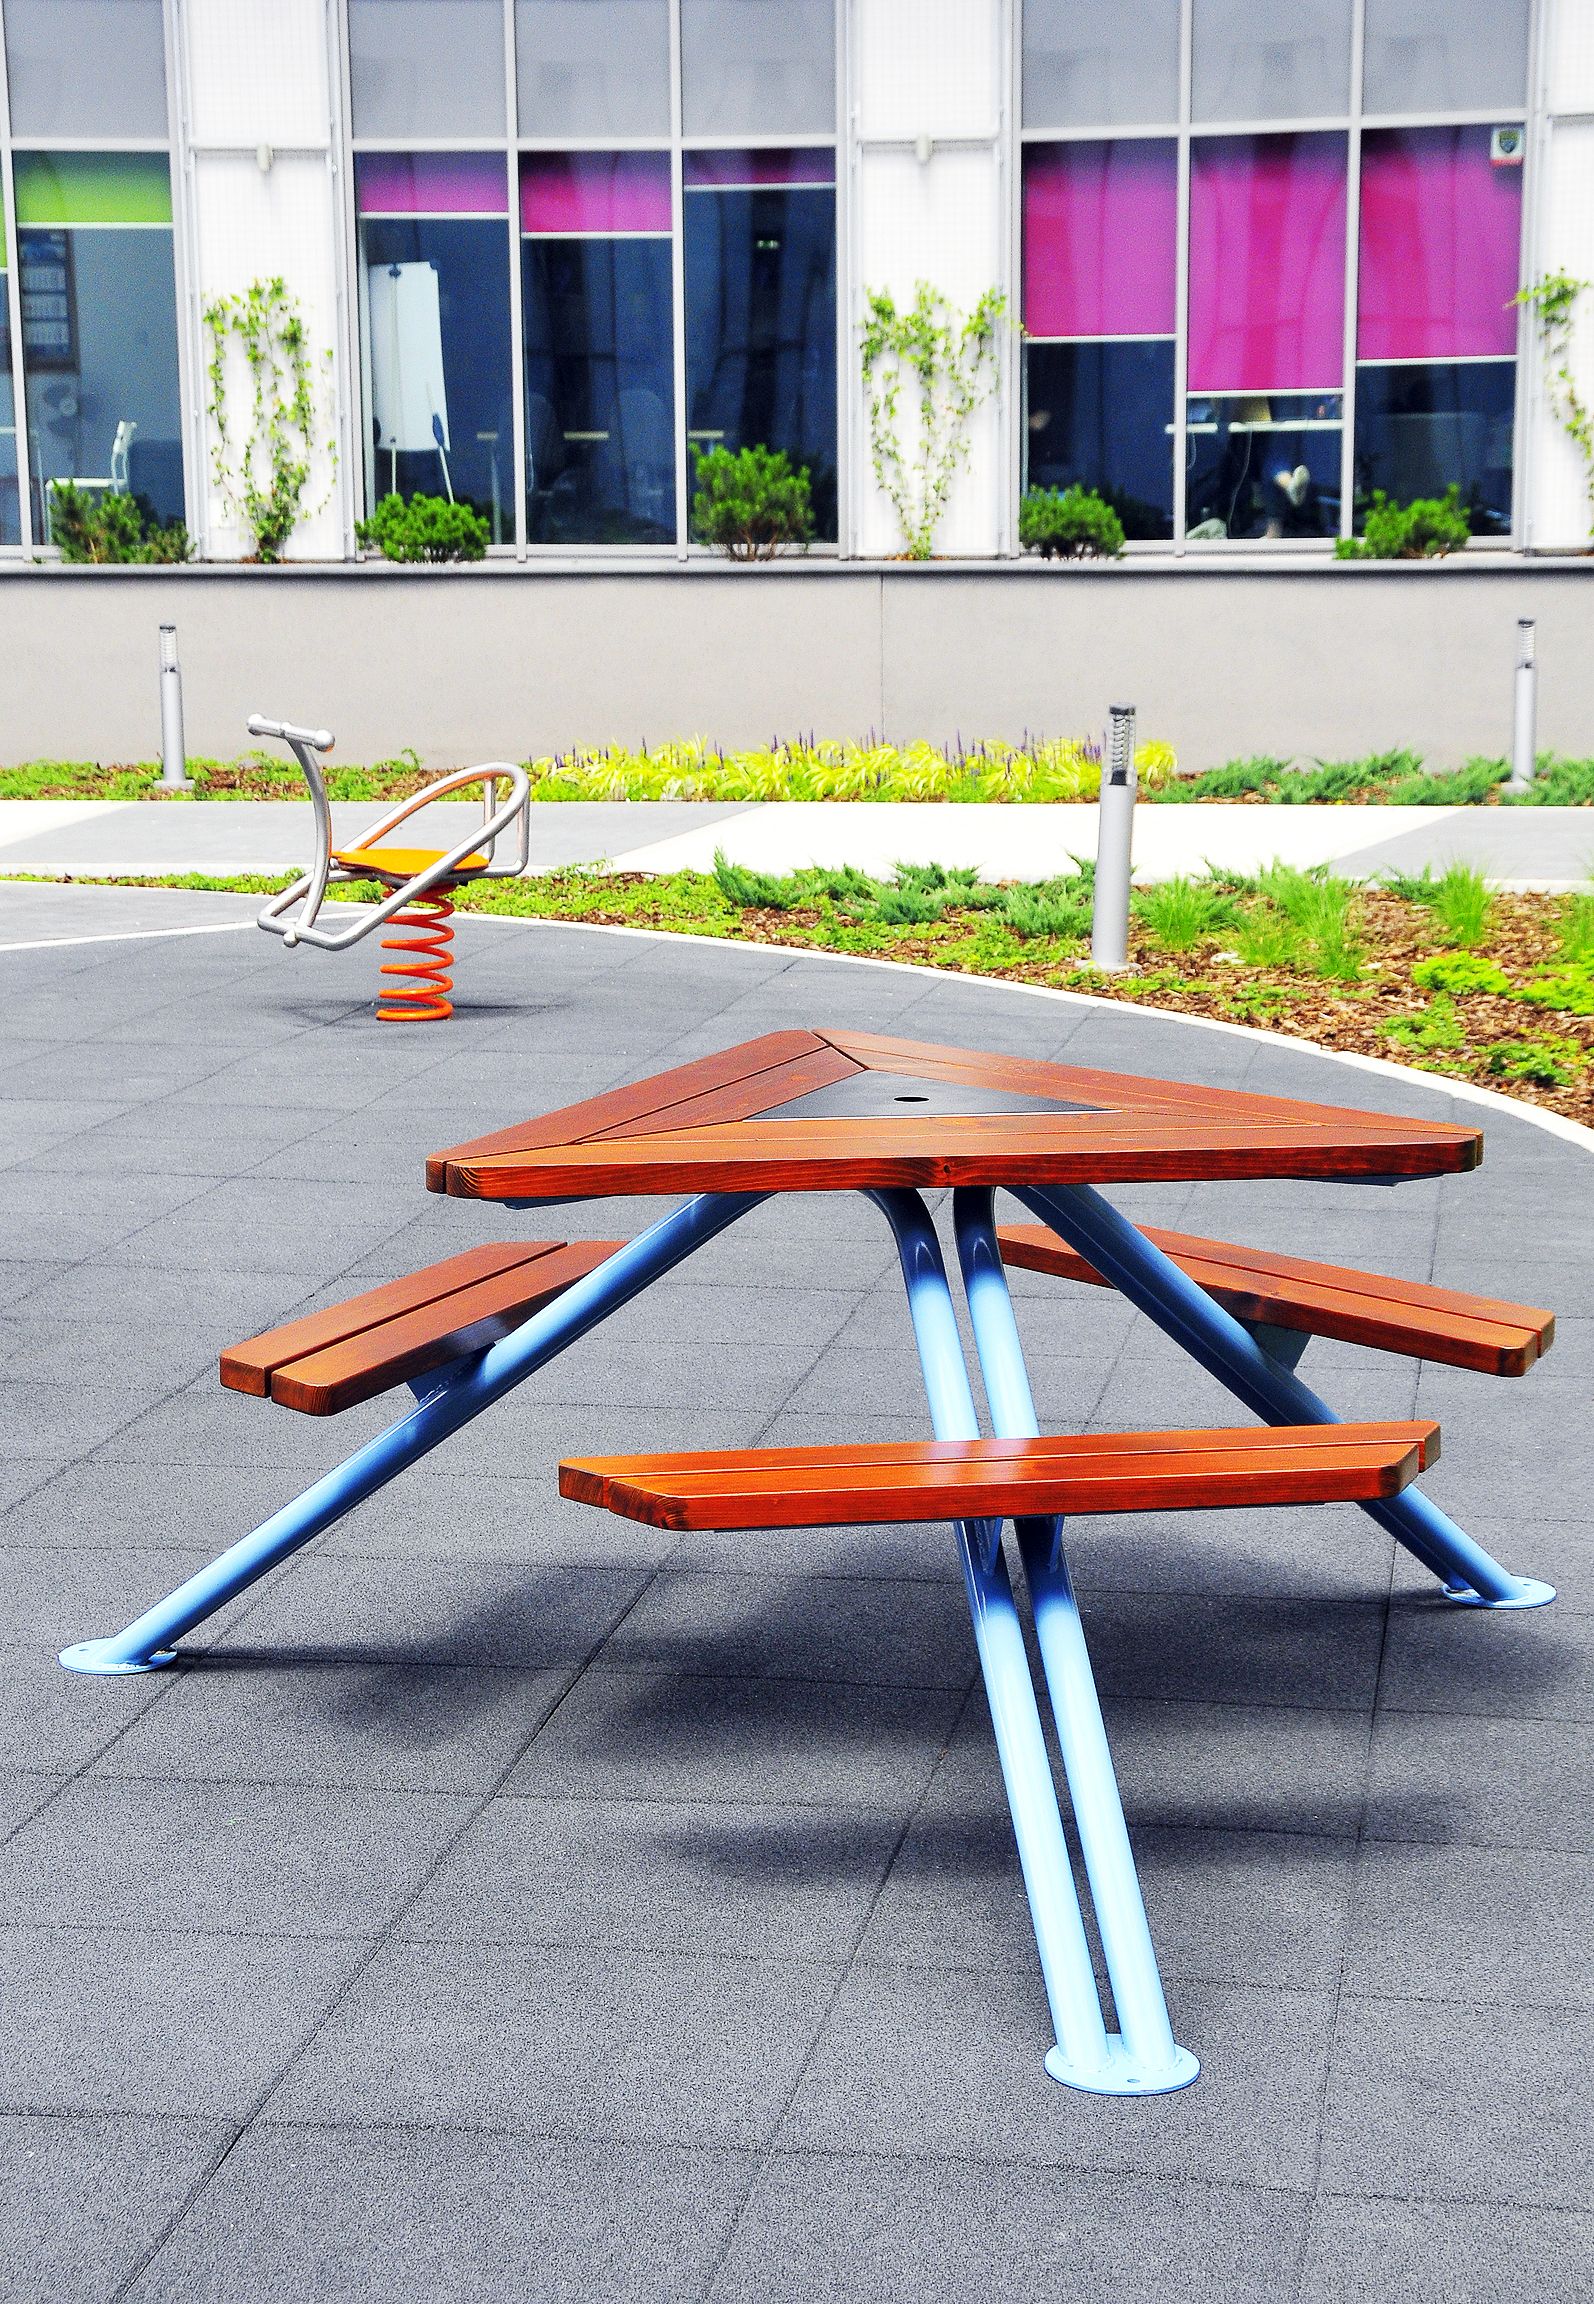 "Mars" - tai pikniko stalas, skirtas miestams ir žaliosioms erdvėms, pavyzdžiui, parkams, sodams ir skverams.